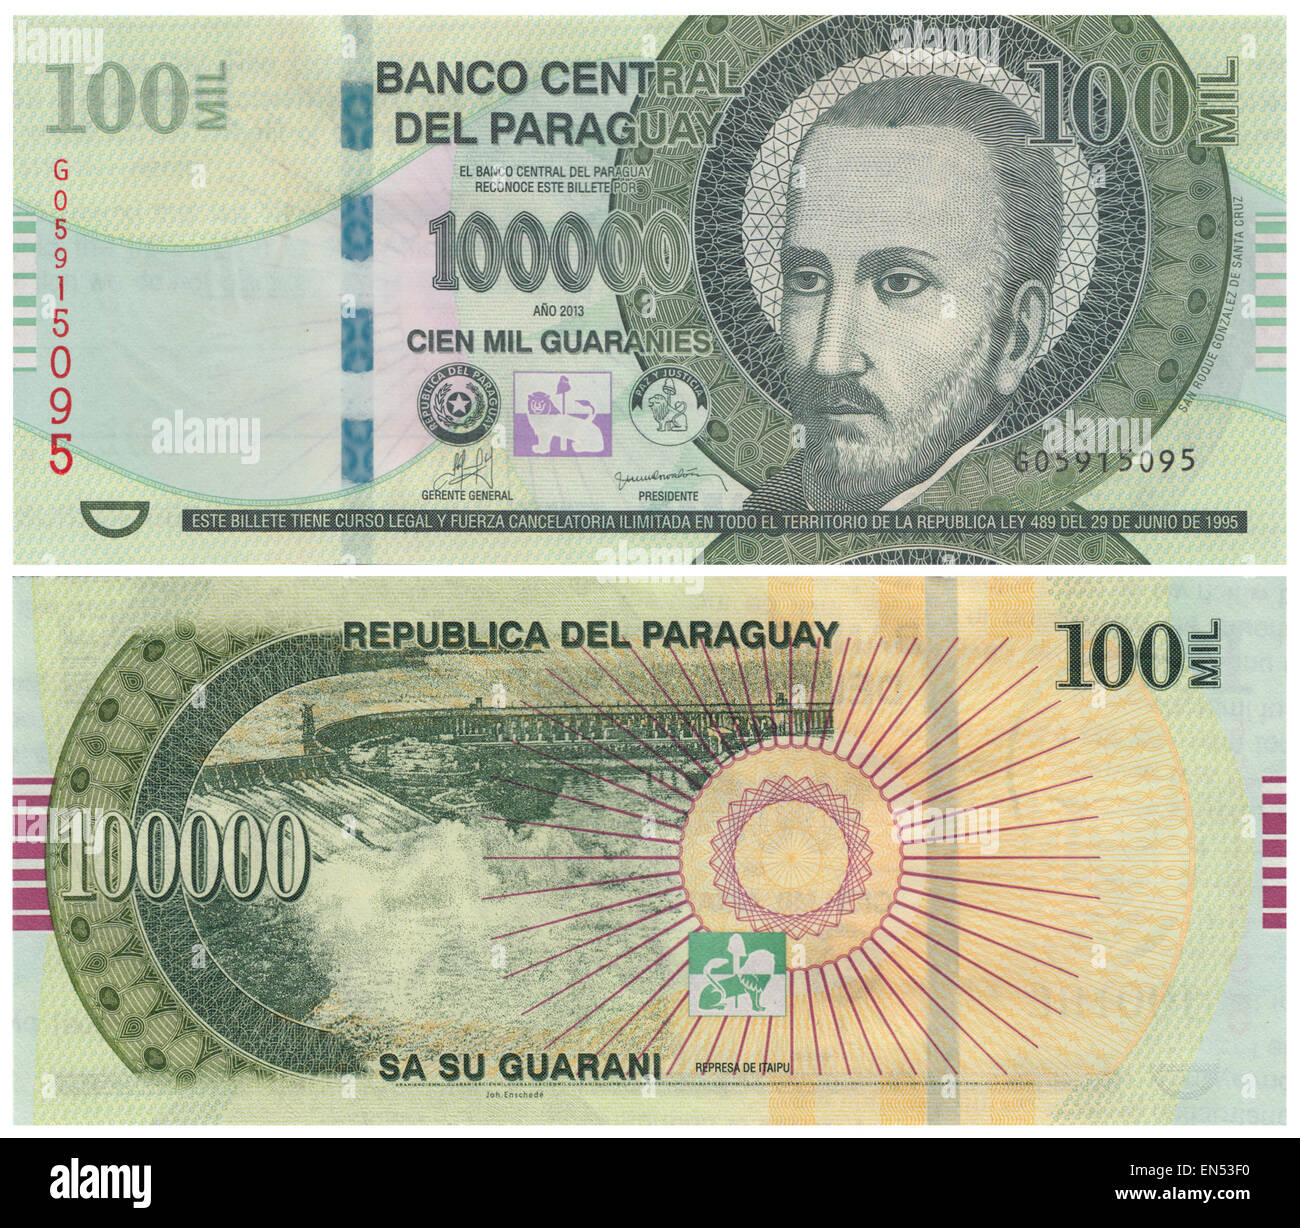 Vorder- und Rückseite des Paraguay ₲100, 000 Guaraní-Banknote (2013). Guaraní ist die nationale Währungseinheit von Paraguay. Die Guaraní wurde in 100 Céntimos unterteilt, aber wegen der Inflation, Céntimos sind nicht mehr gebräuchlich. Stockfoto